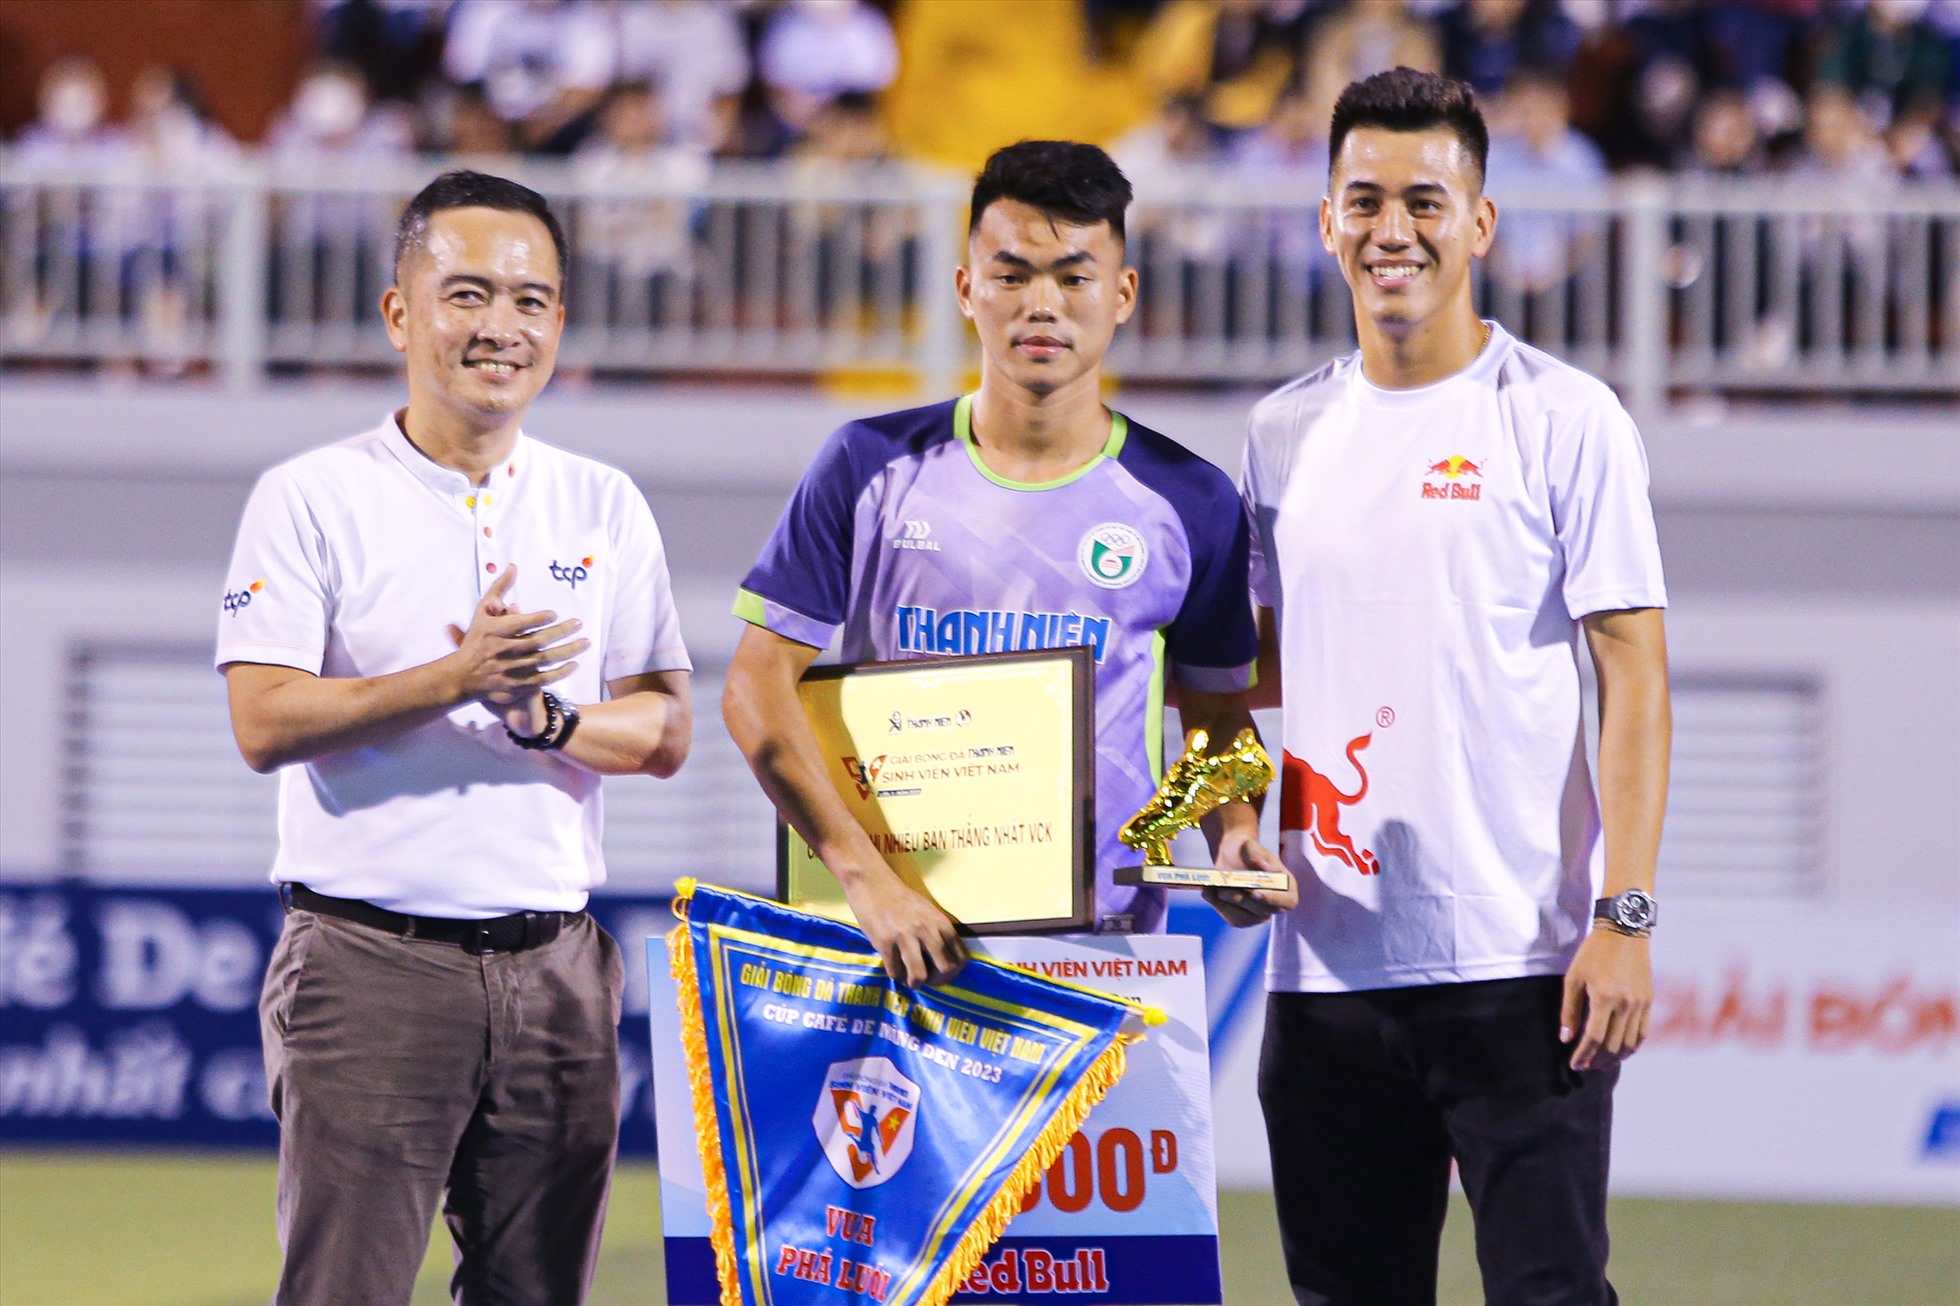 Đến dự trận chung kết còn có tiền đạo đội tuyển Việt Nam - Nguyễn Tiến Linh.